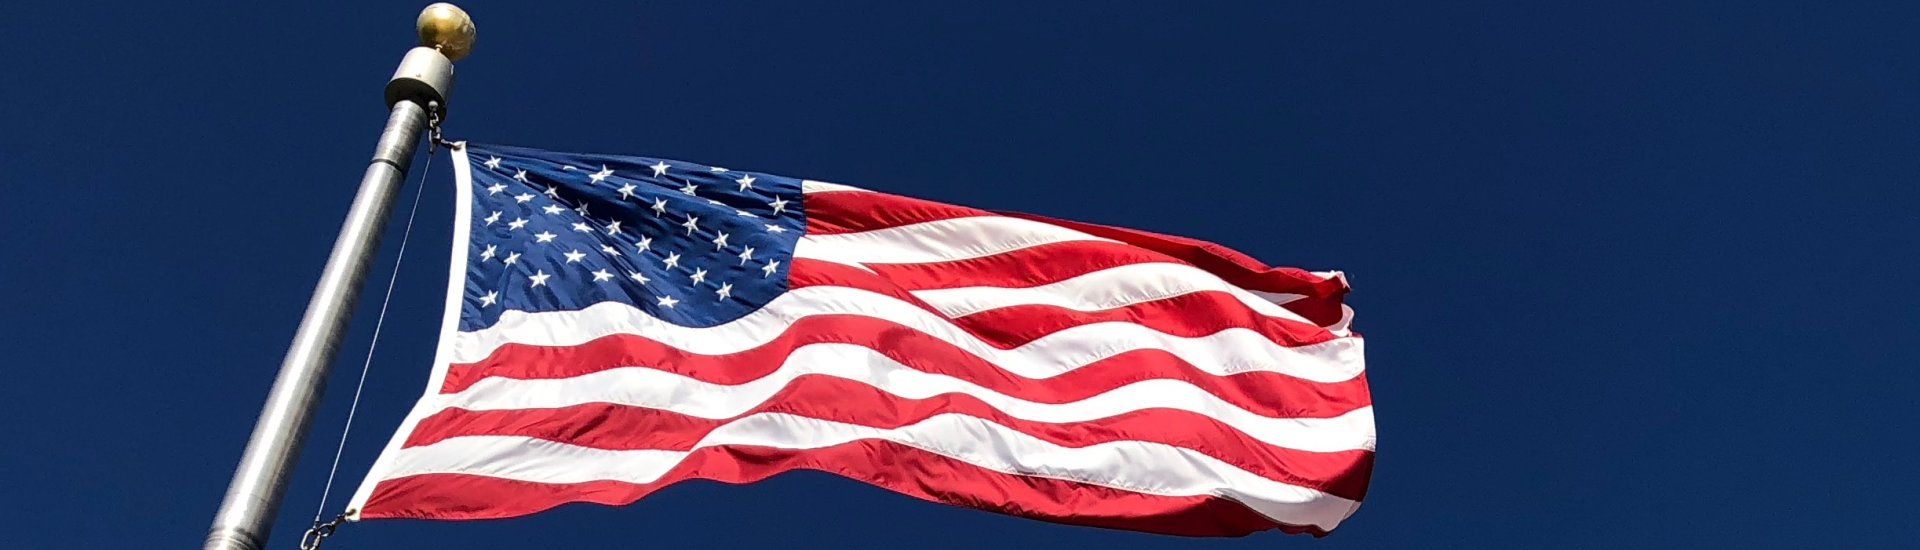 Amerikaanse vlaggen wapperen in de wind.